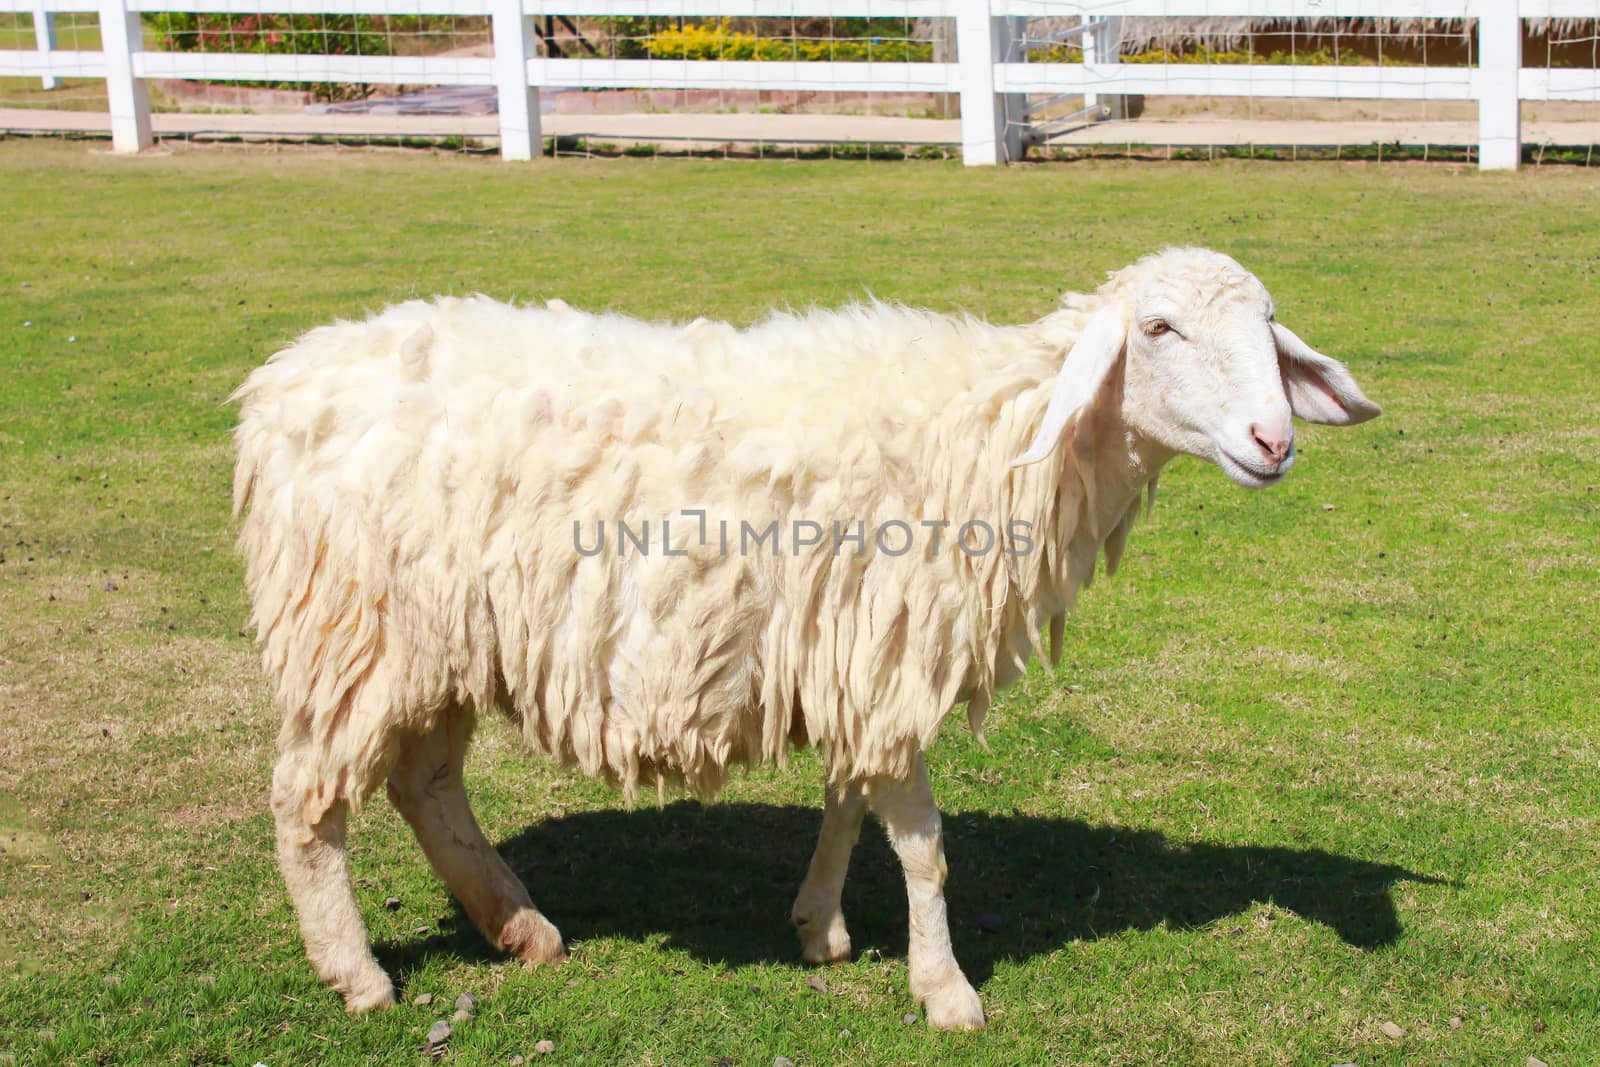 Sheep in farm field